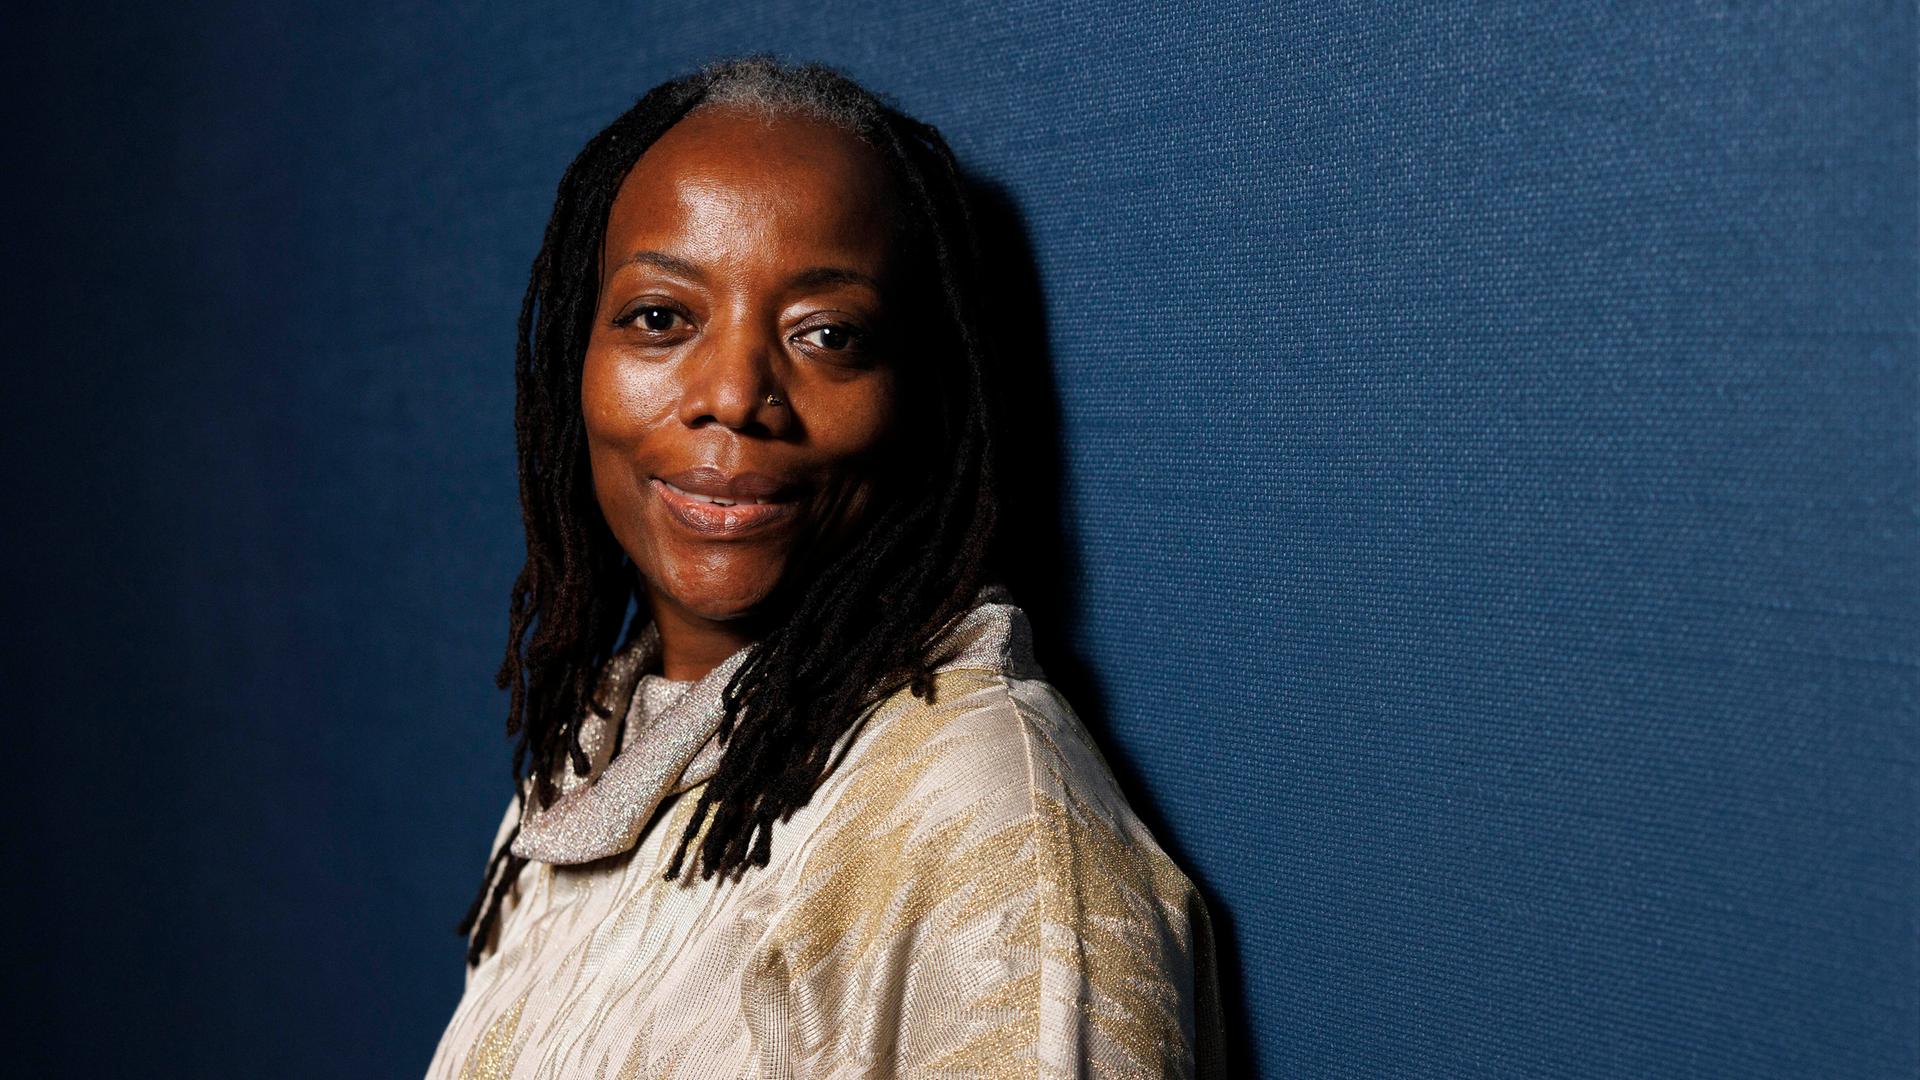 Porträtaufnahme der simbabwischen Autorin und Filmemacherin Tsitsi Dangarembga. Sie trägt ein helles Oberteil, ihre Haare sind zu vielen Zöpfen geflochten und sie steht vor einem graublauen Hintergrund.